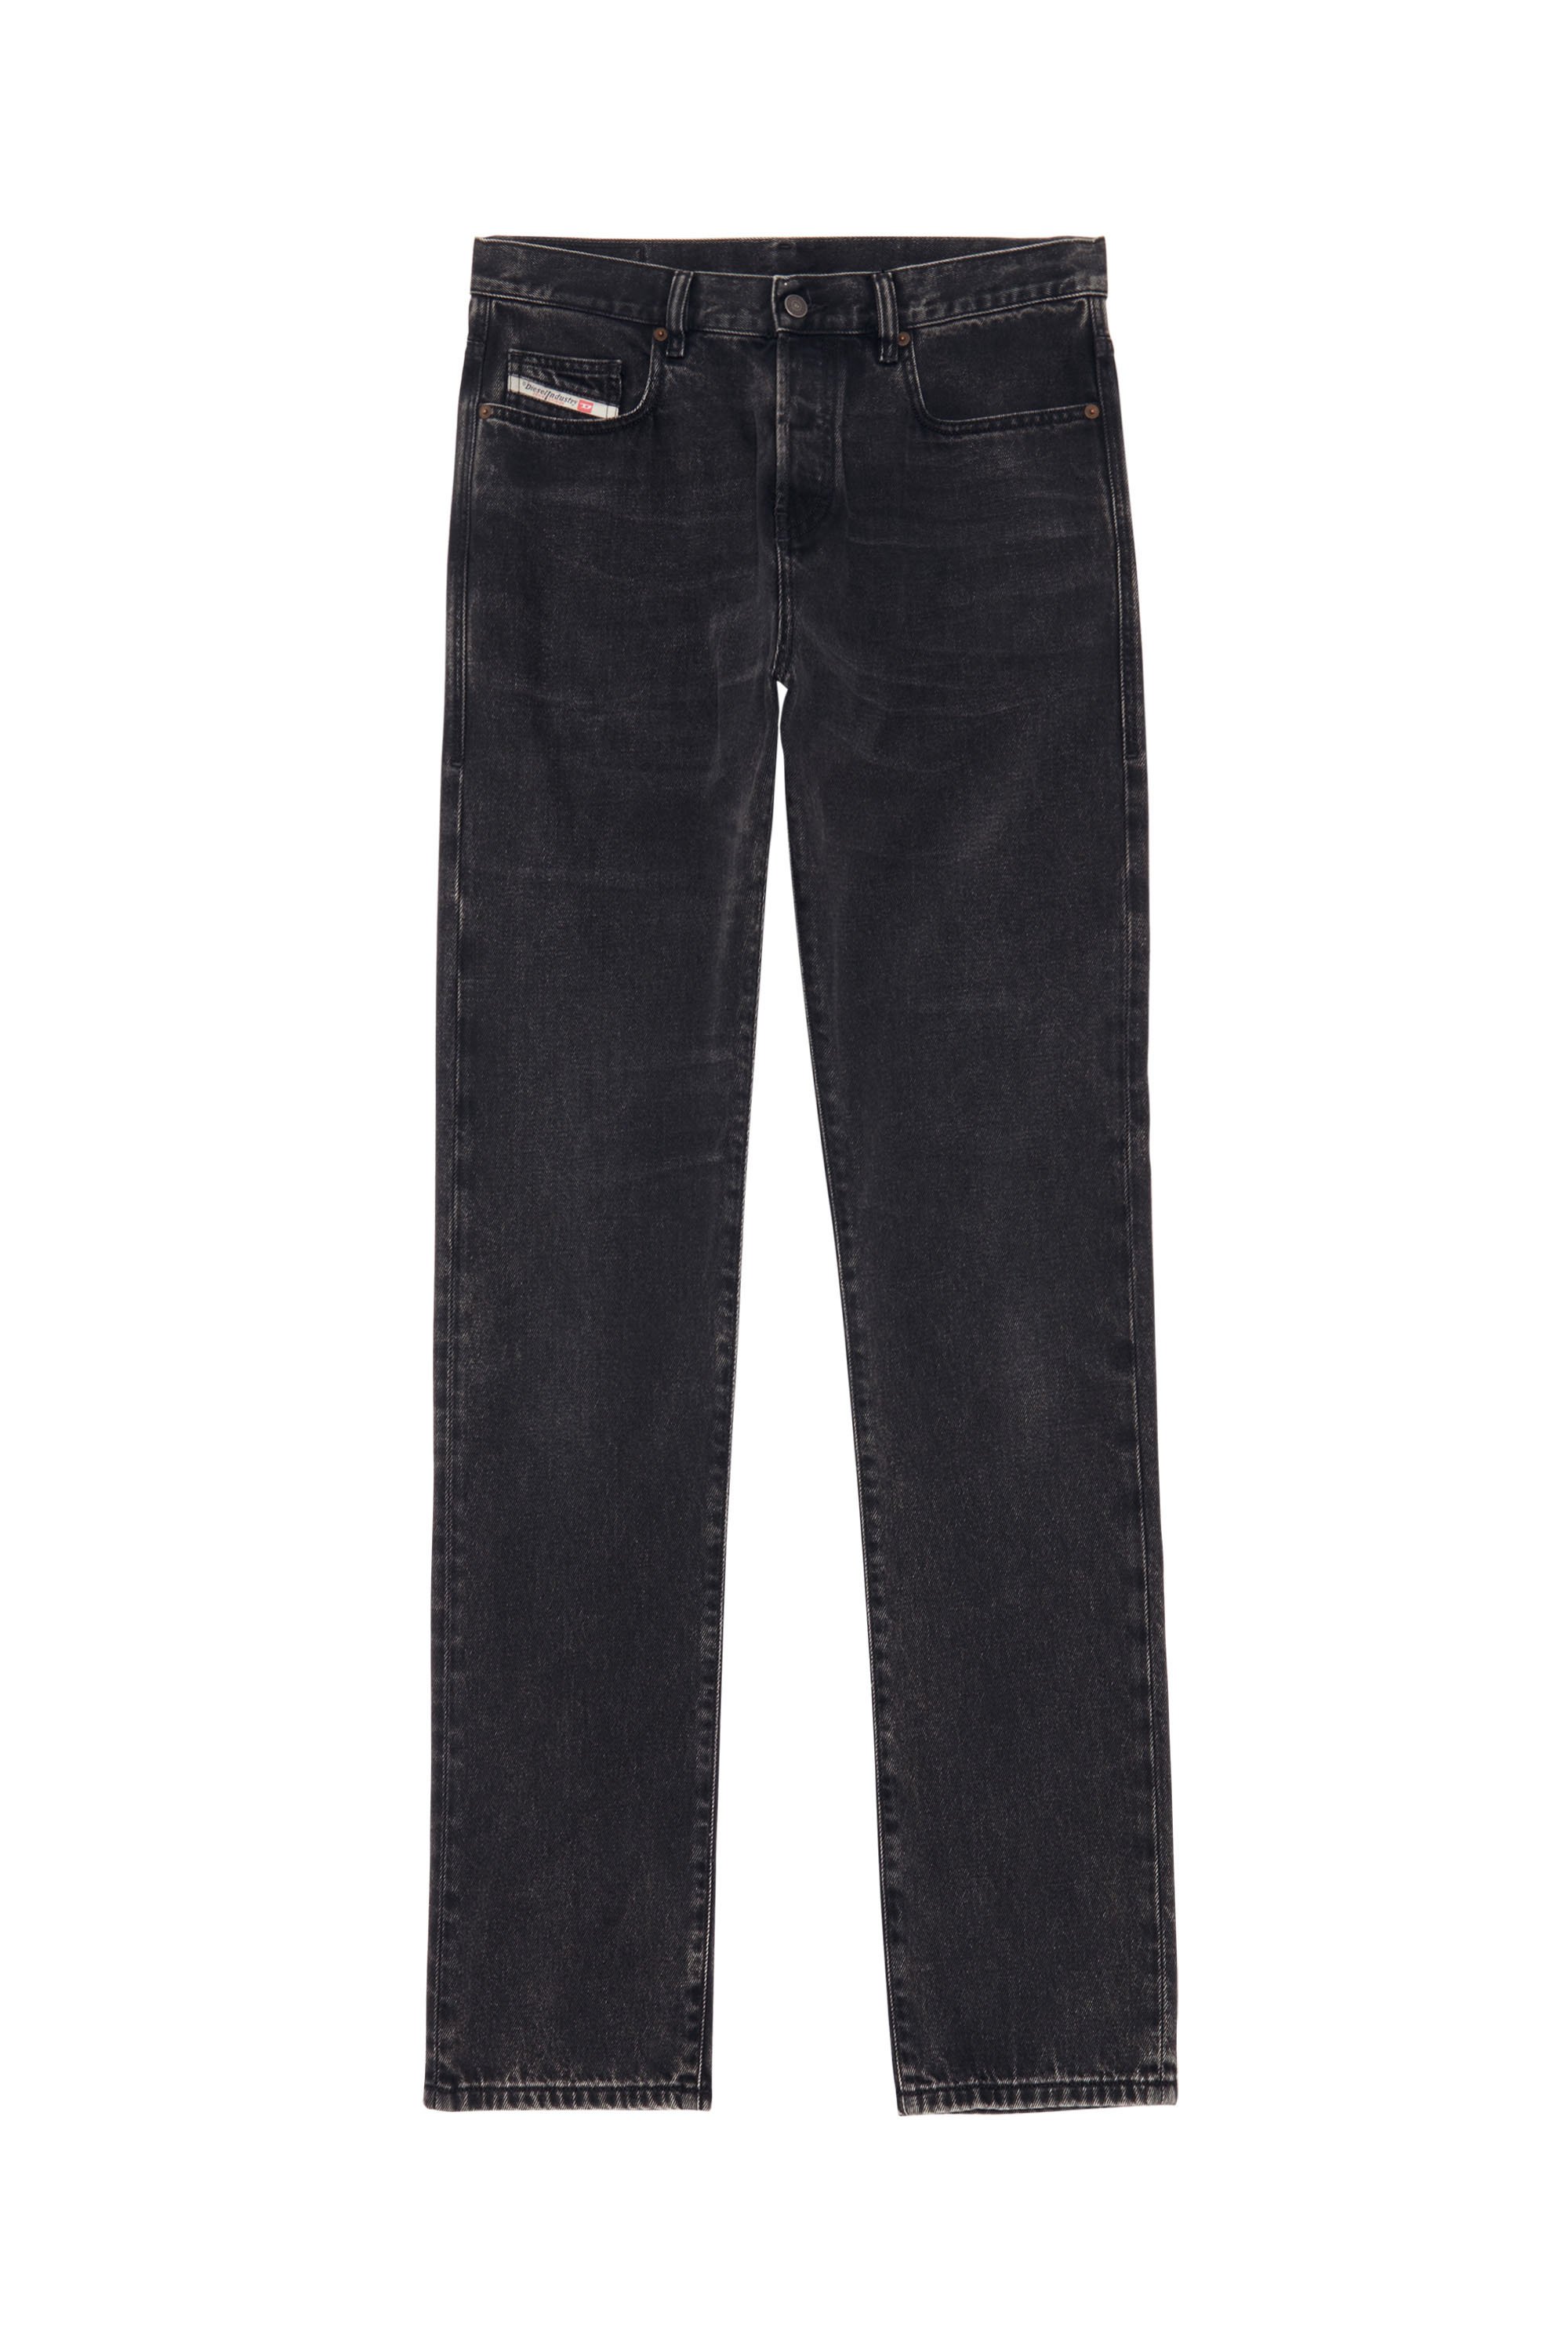 Skinny Jeans 2015 Babhila Z870G, Black/Dark grey - Jeans